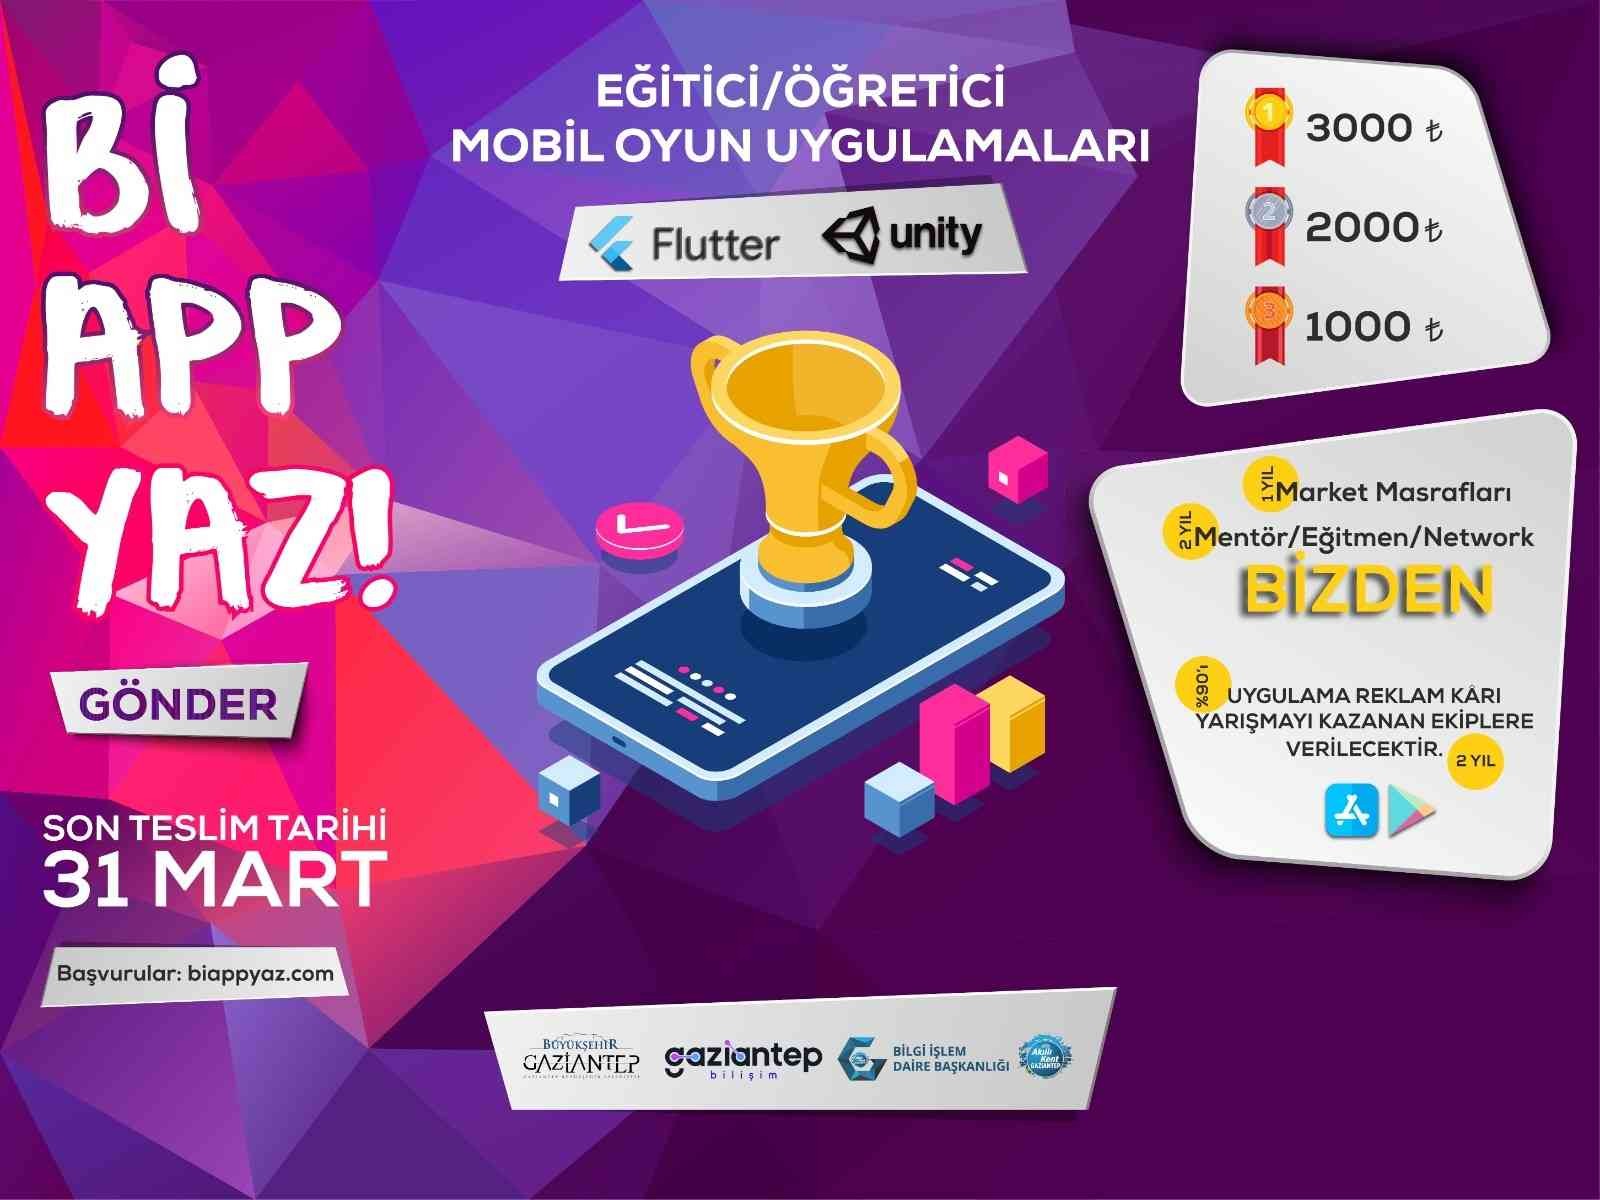 Teknoloji temalı proje yarışması için son başvuru tarihi: 31 Mart #gaziantep